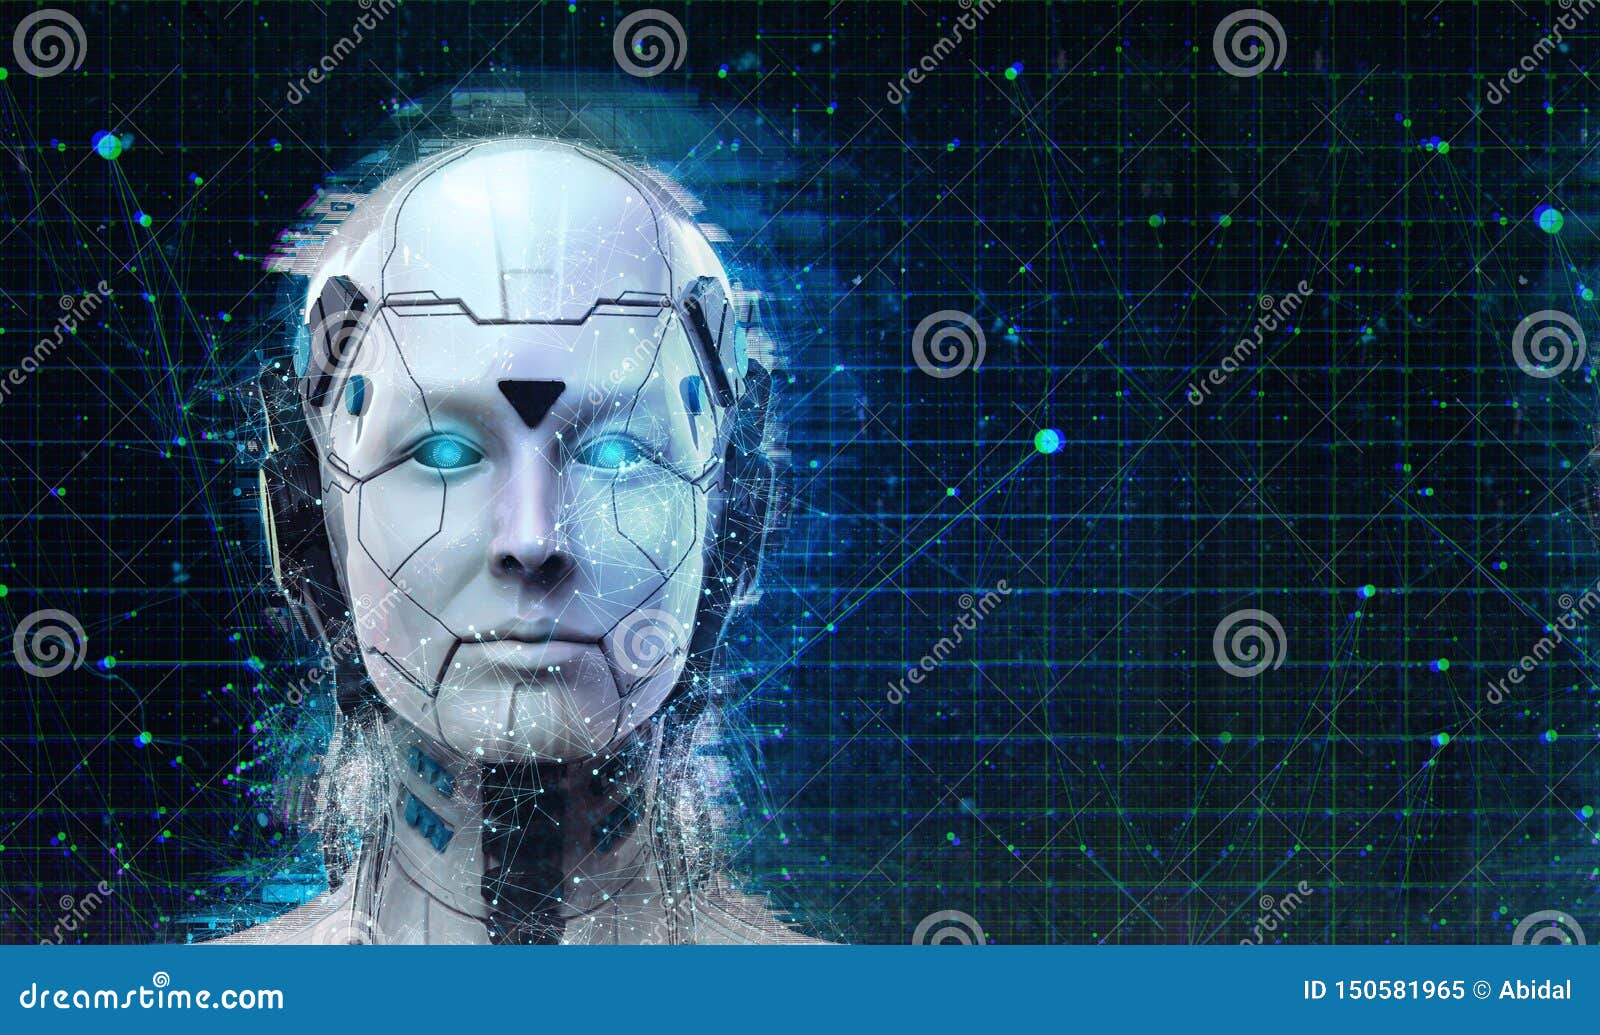 artificial intelligence robot wallpaper